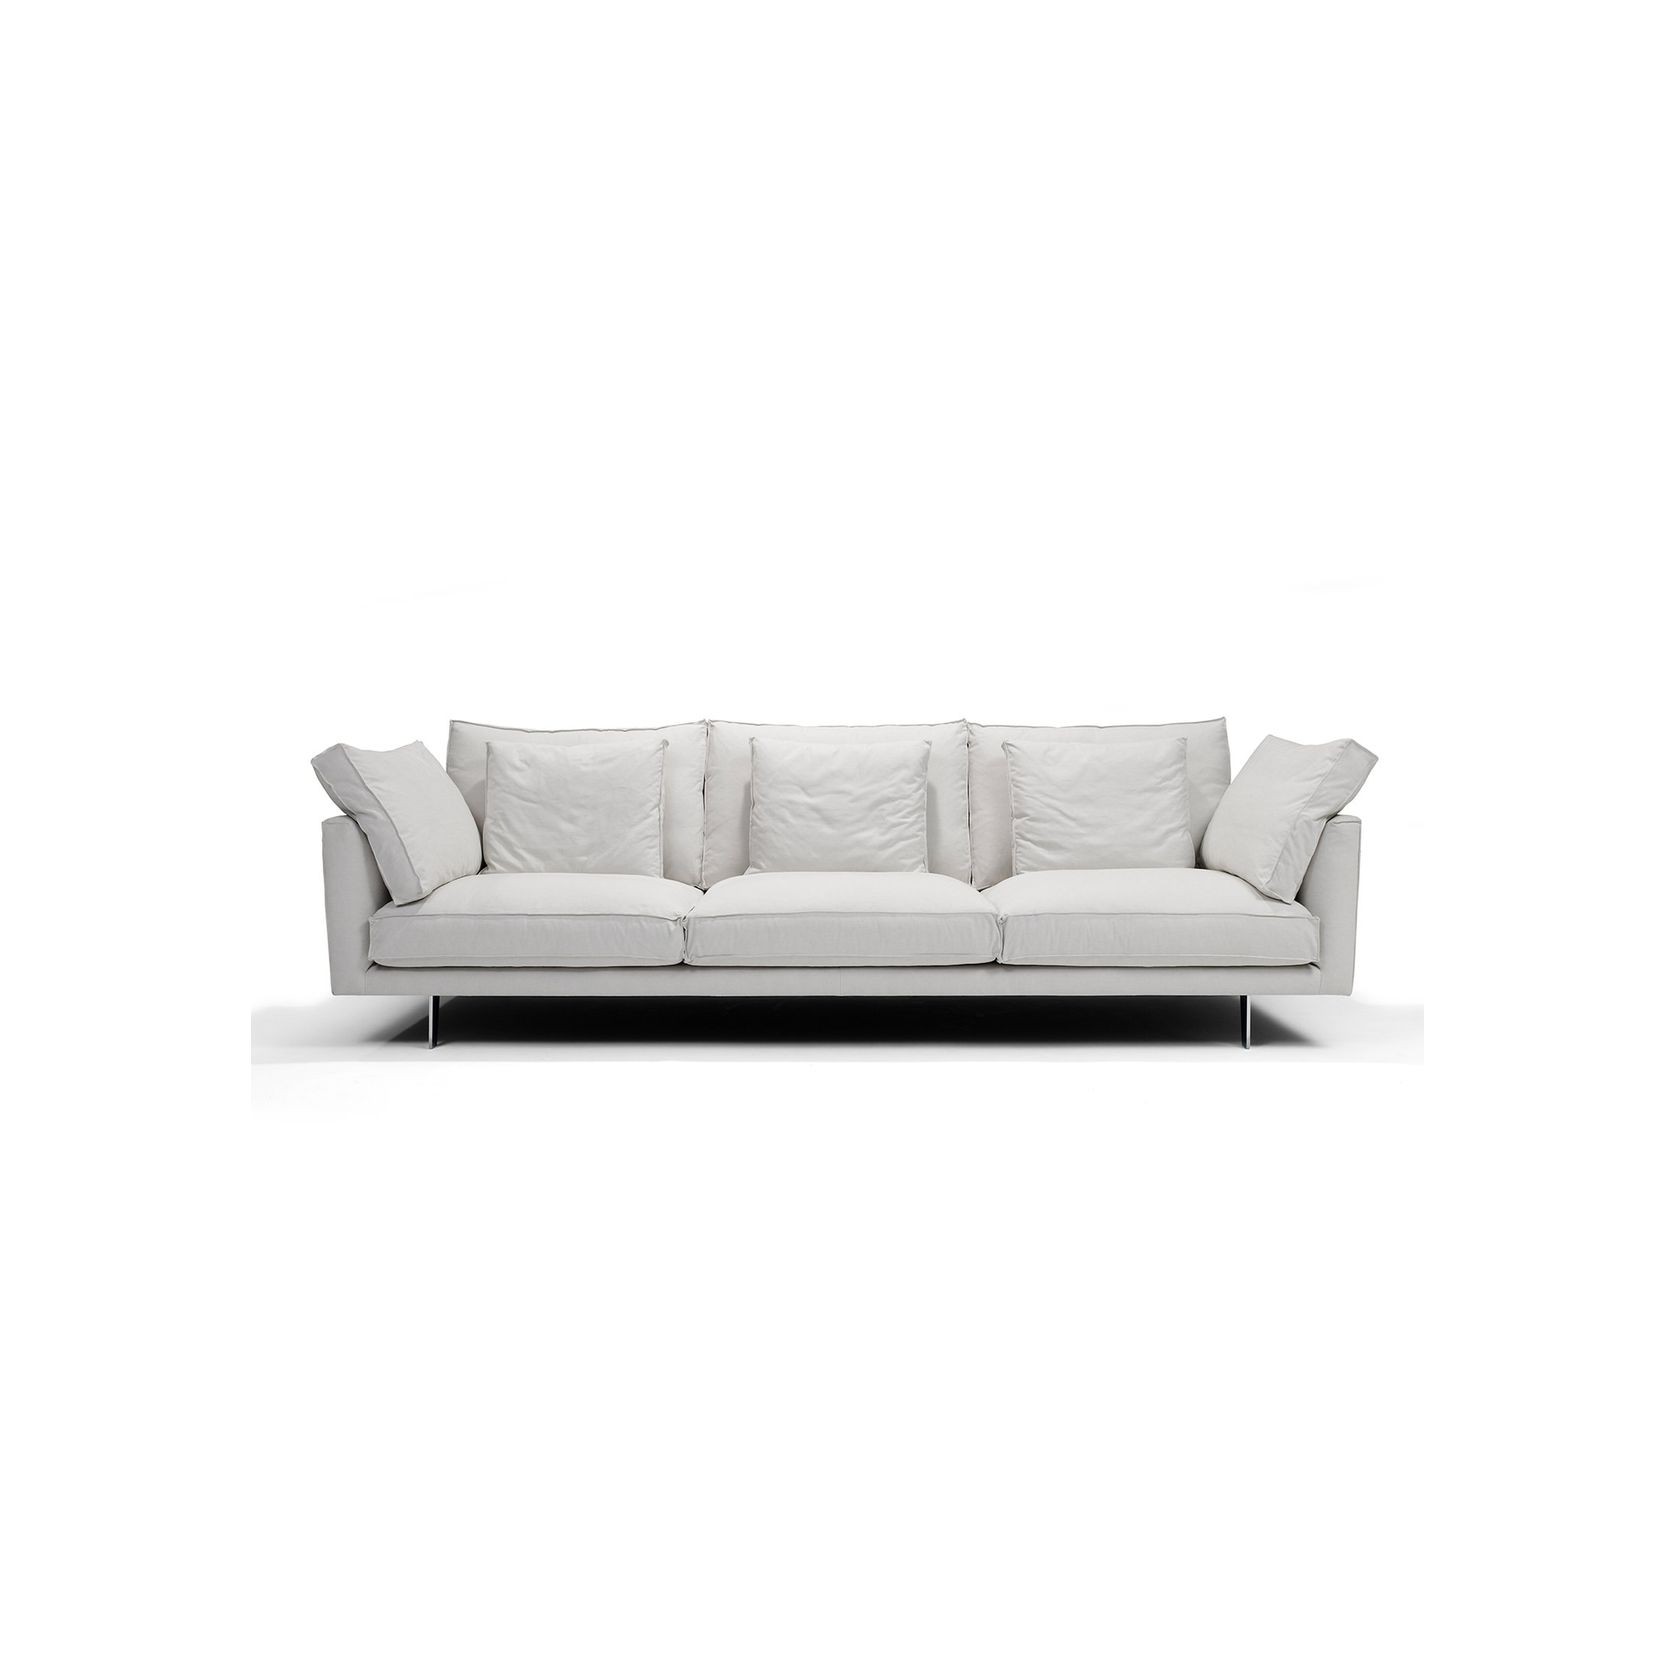 Metropolitan Sofa by Linteloo gallery detail image